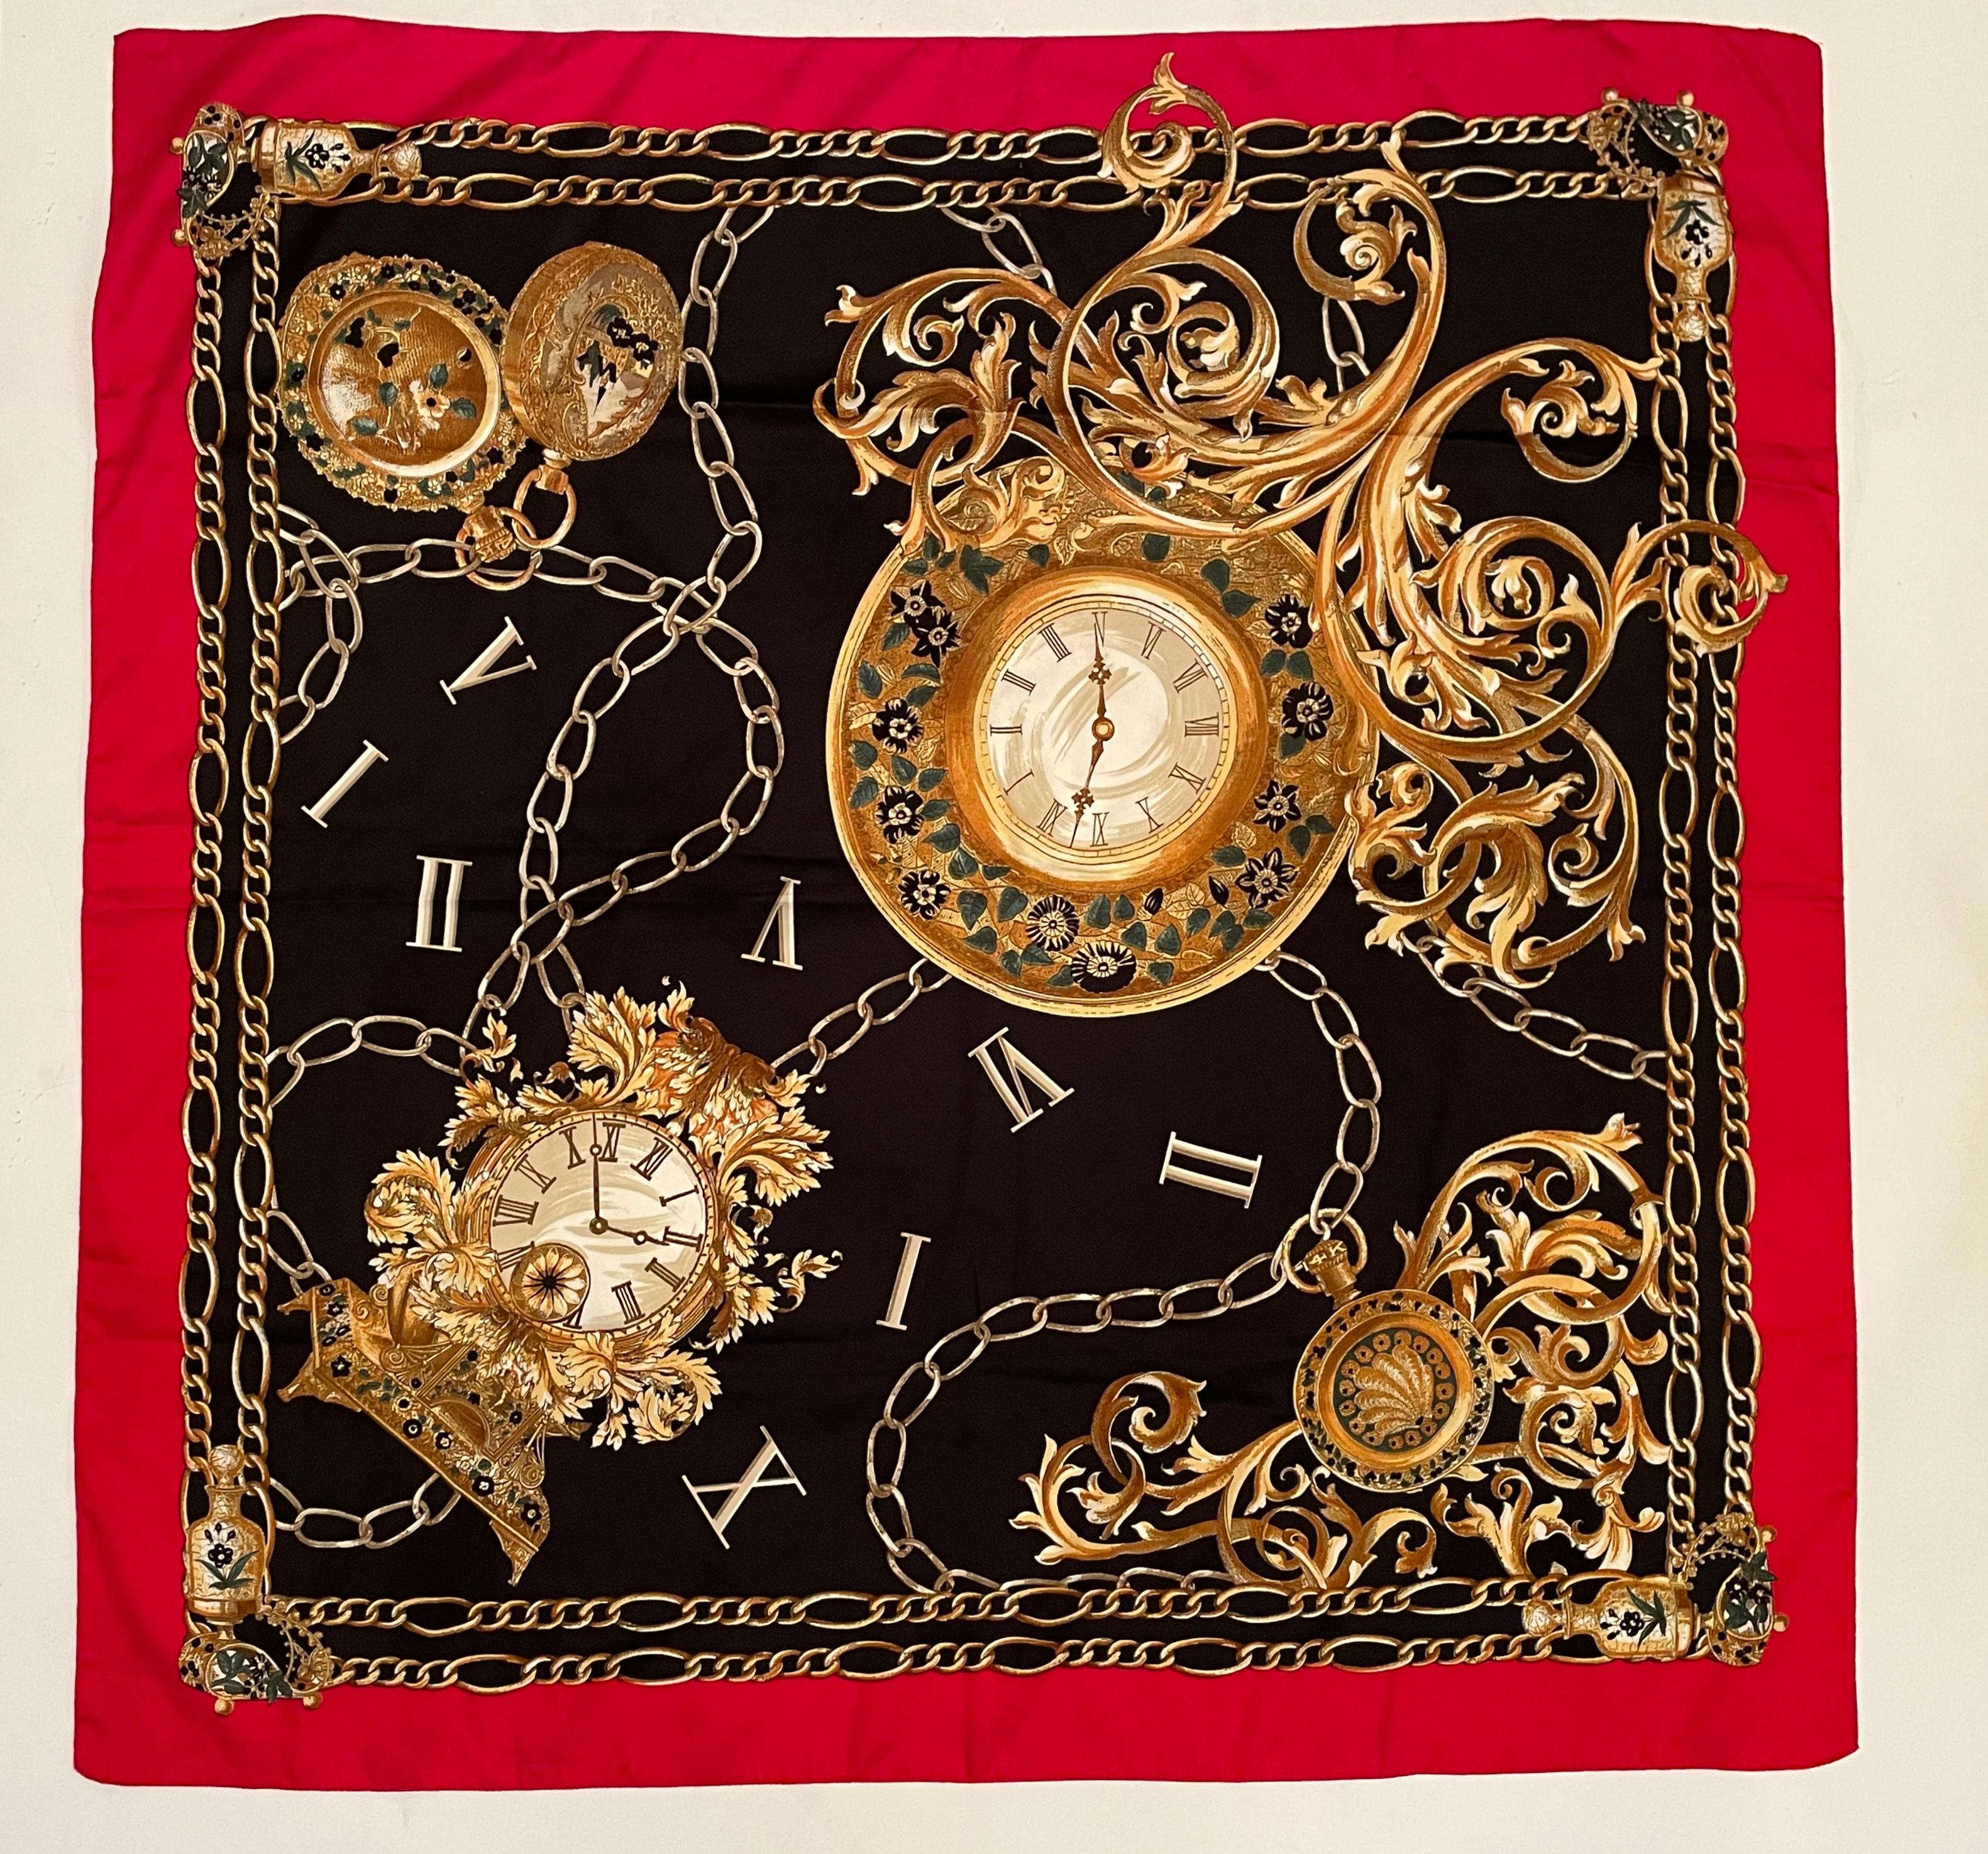 Un magnifique foulard vintage de style Hermès avec de grandes et petites horloges victoriennes, des horloges murales, des horloges de poche et des chiffres romains avec des chaînes en or autour.
Impression en couleurs or sur fond noir avec une